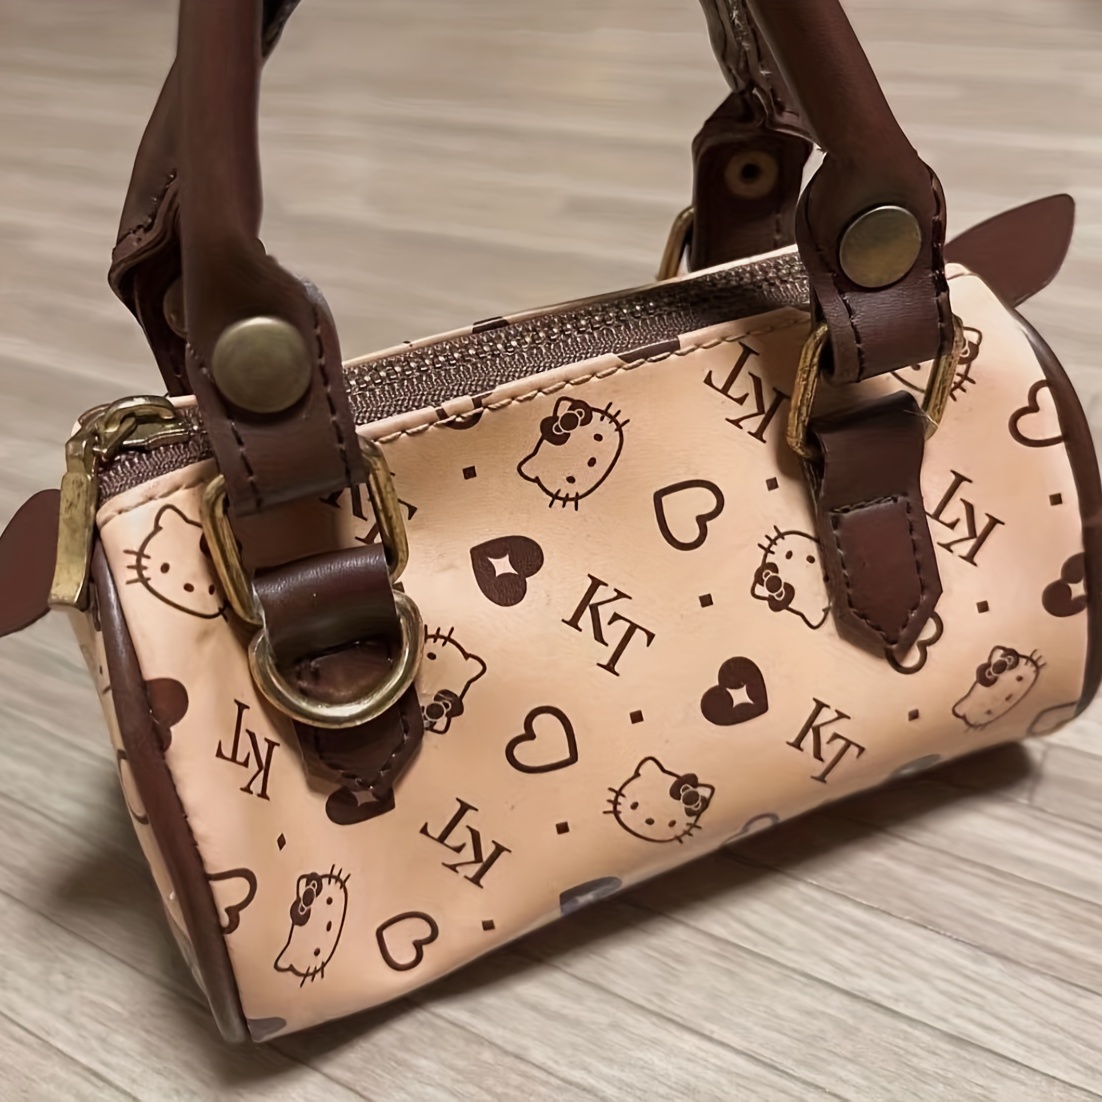 Buy Pop It Hello Kitty Shape Zipper Bag Online In Pakistan At Toyzone.pk